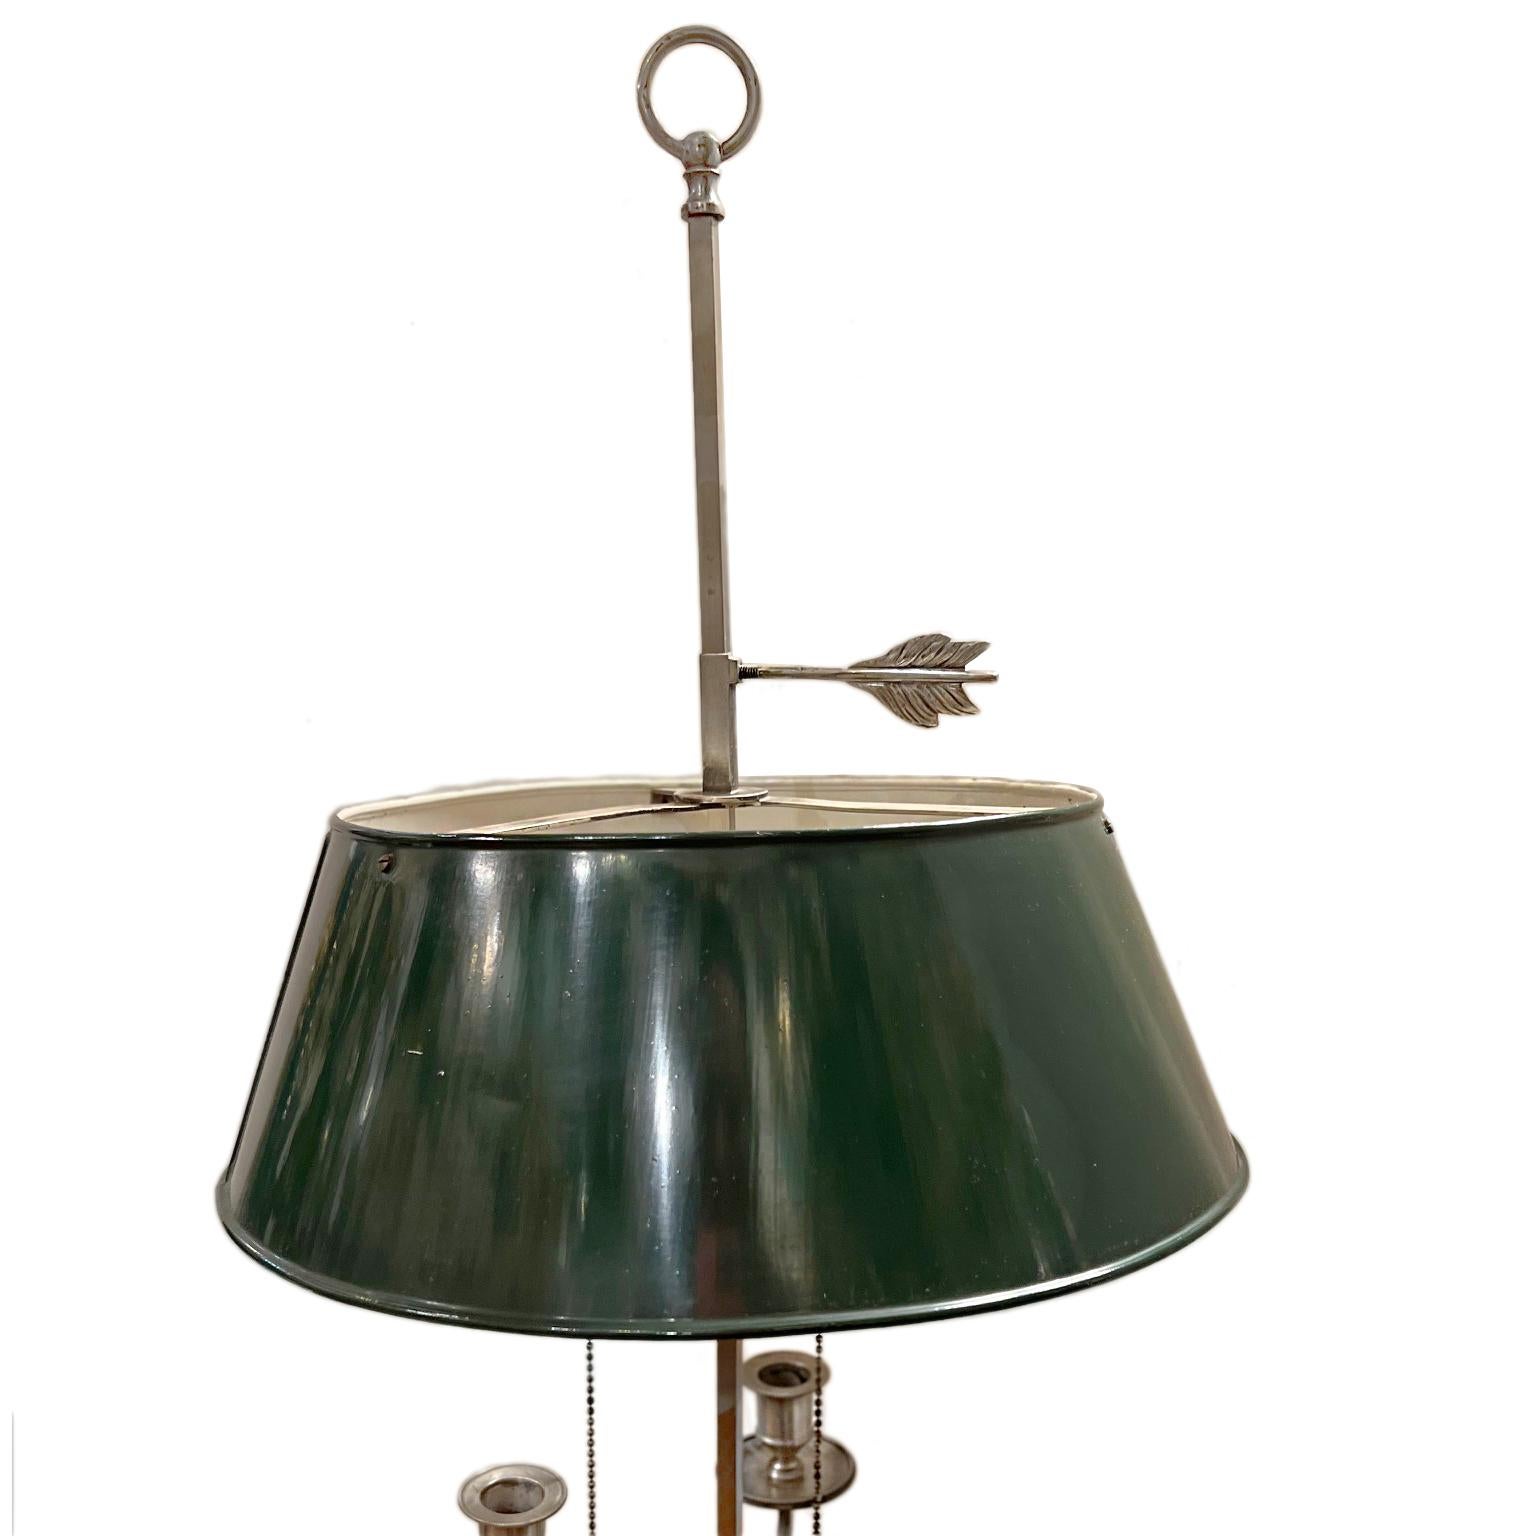 Une grande lampe Bouillotte française des années 1920 en métal argenté avec un abat-jour en tole et une patine d'origine.

Mesures :
Diamètre : 14